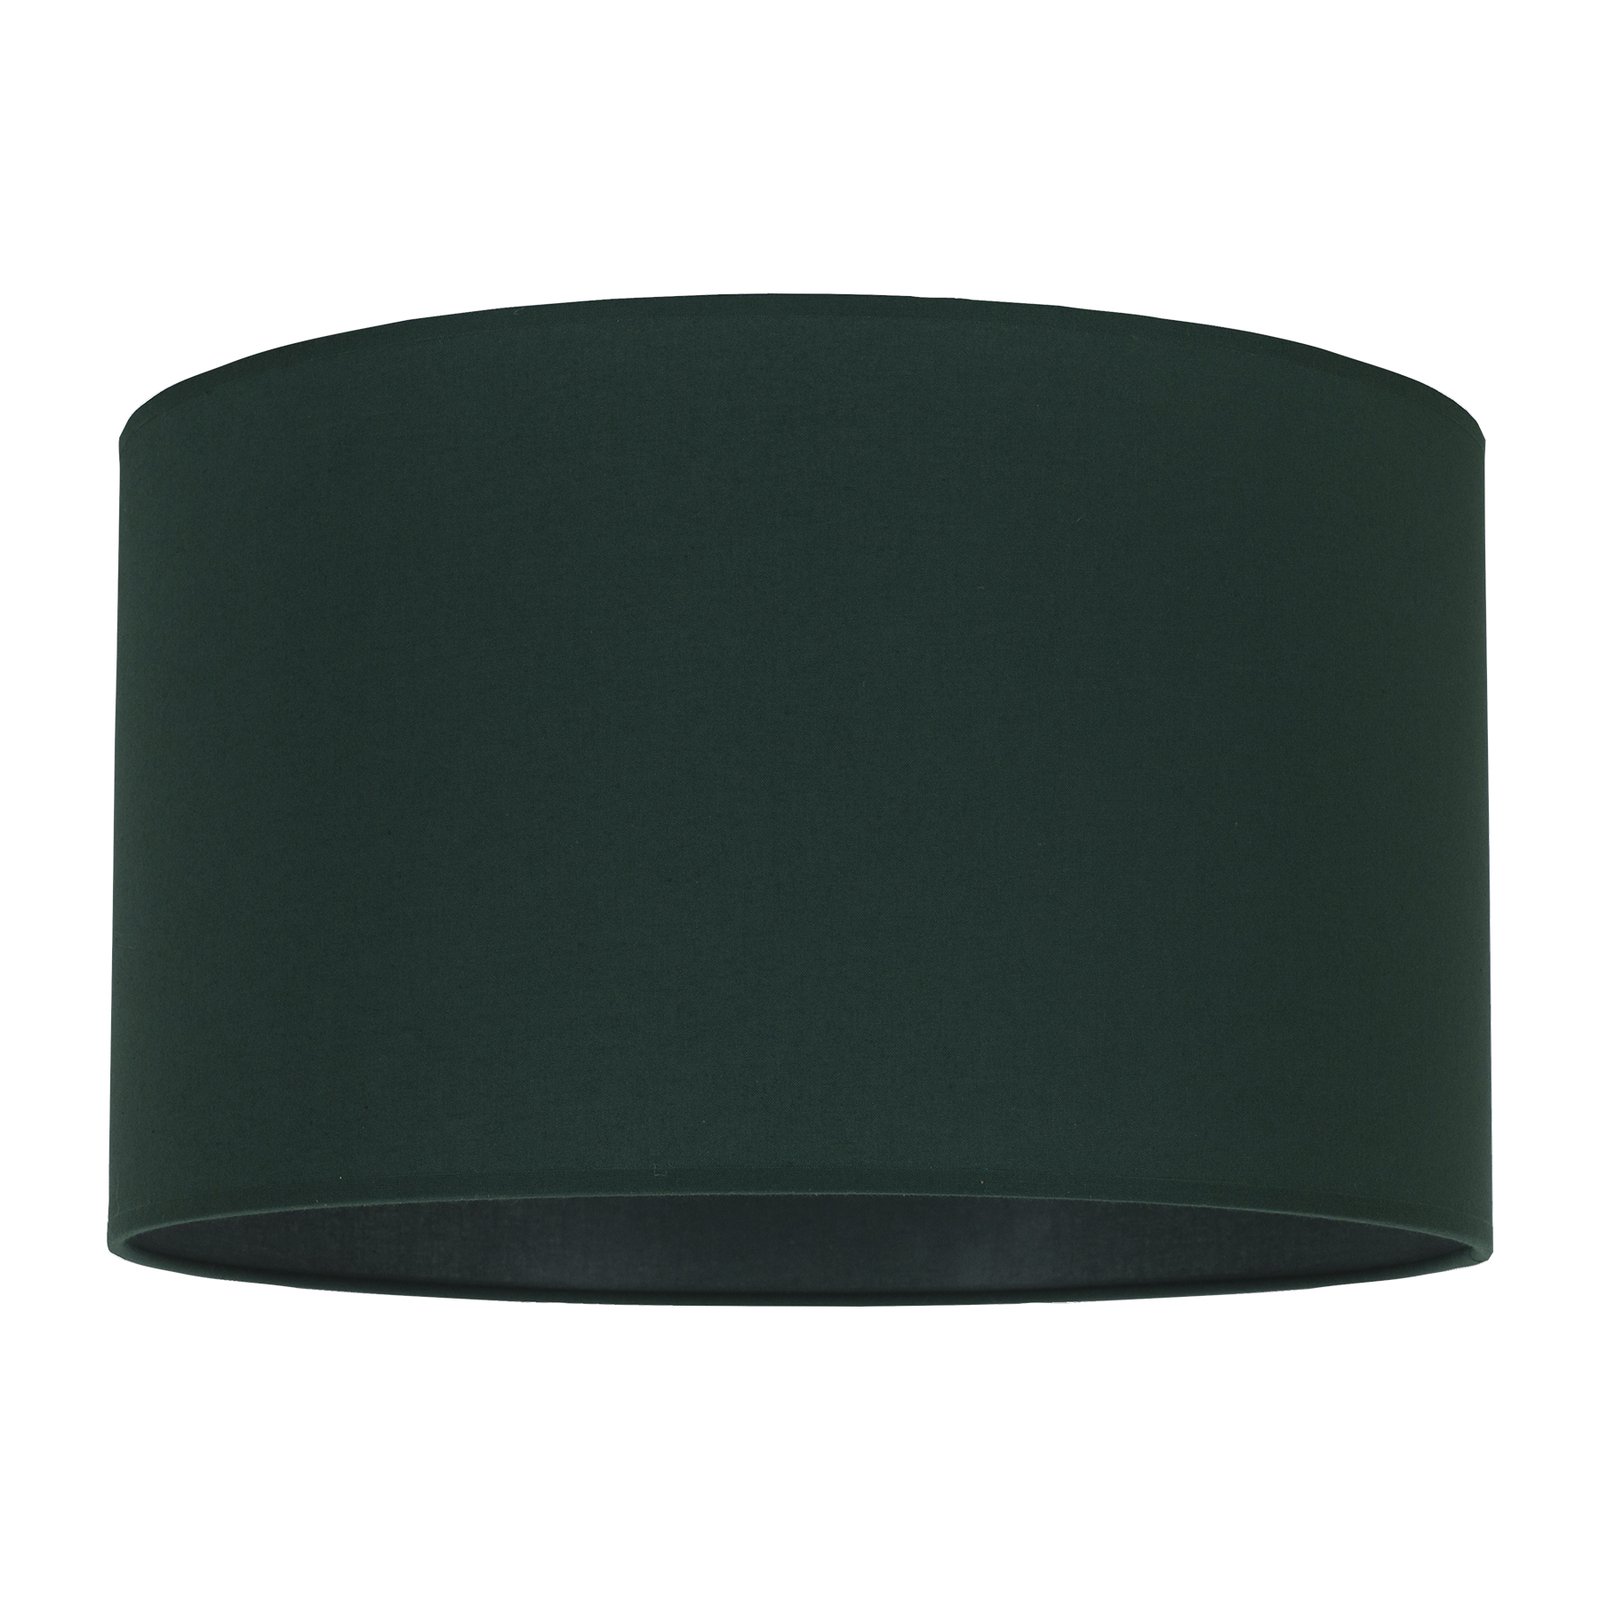 Lampenschirm Roller, grün, Ø 40 cm, Höhe 22 cm